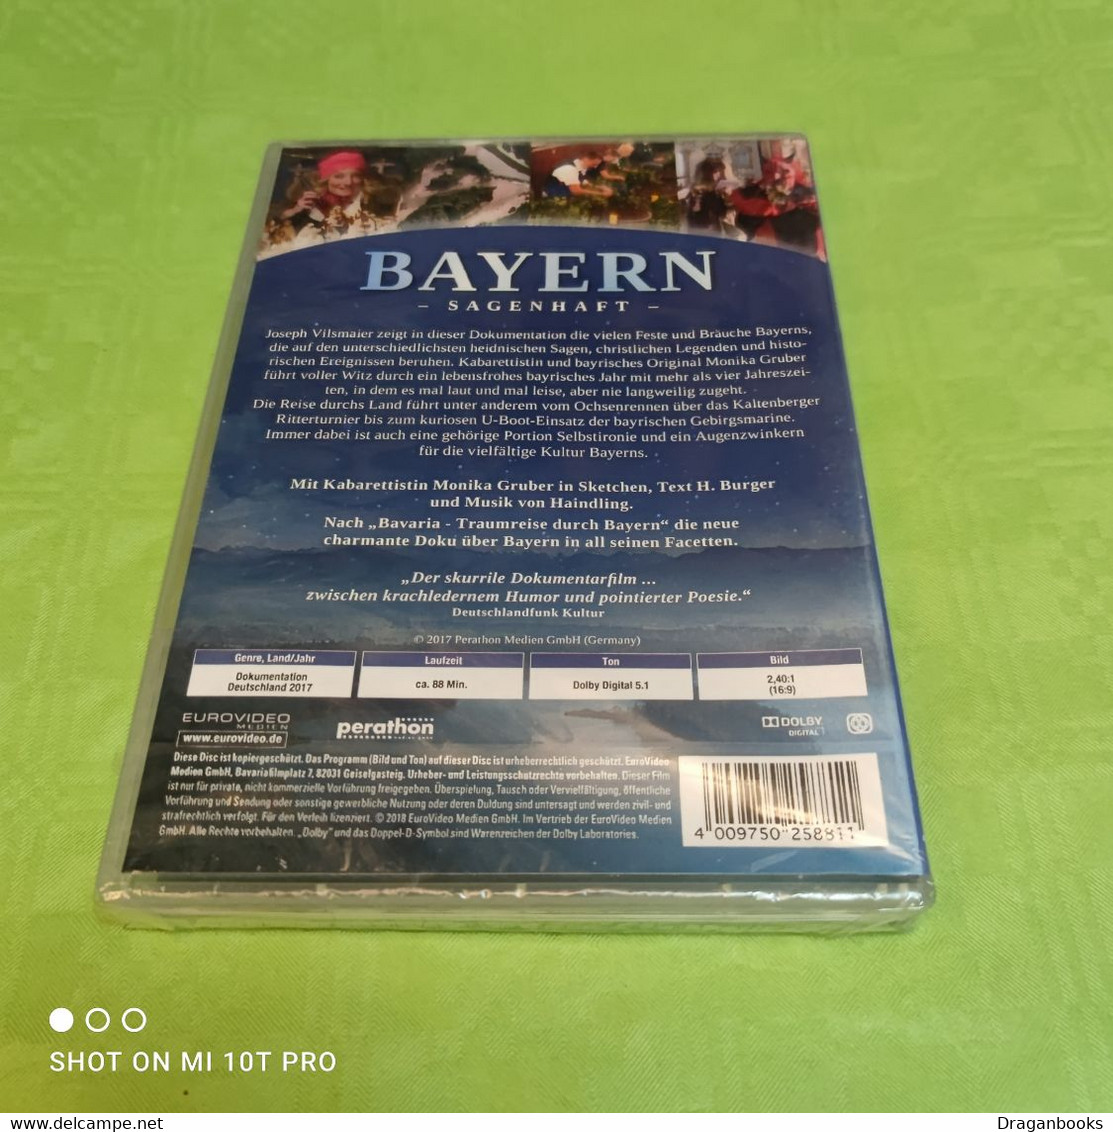 Bayern Sagenhaft - Reise